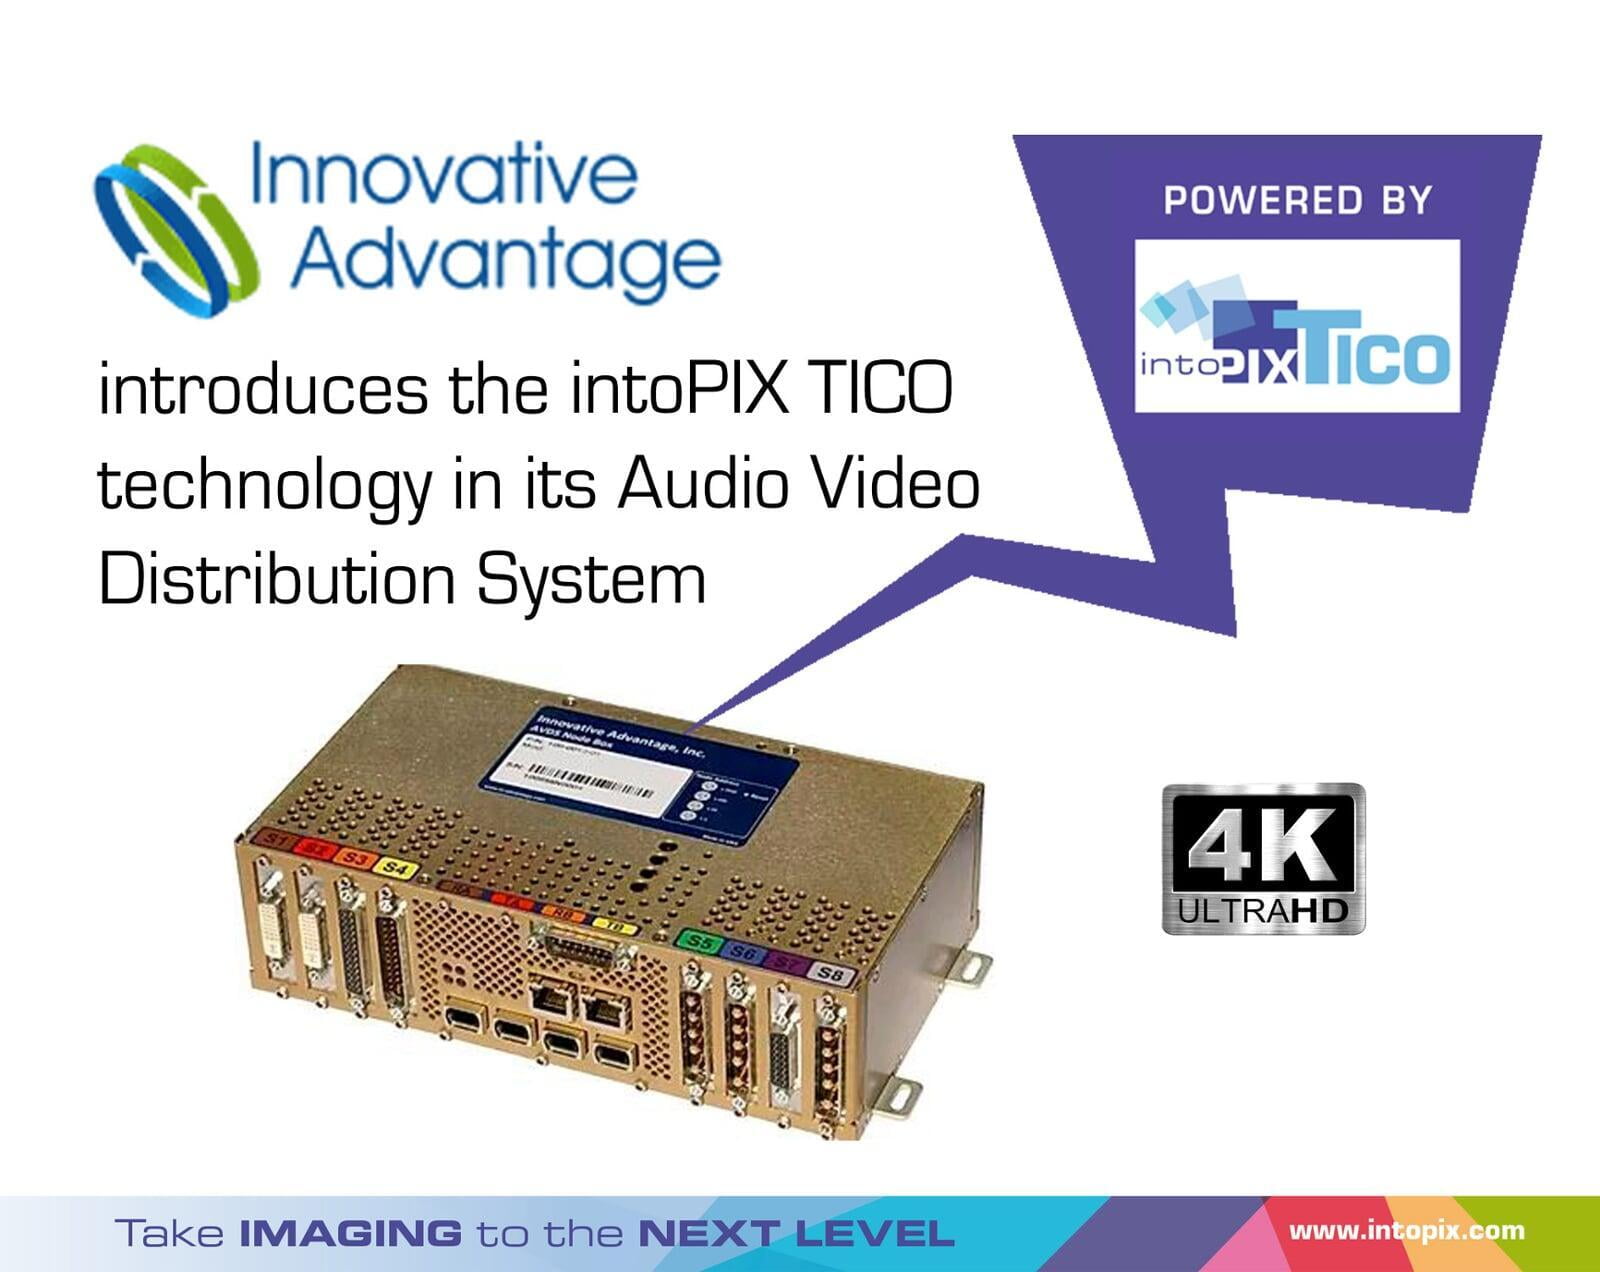 创新优势通过intoPIX TICO RDD35技术将公务机中的流媒体从高清升级到4K。 